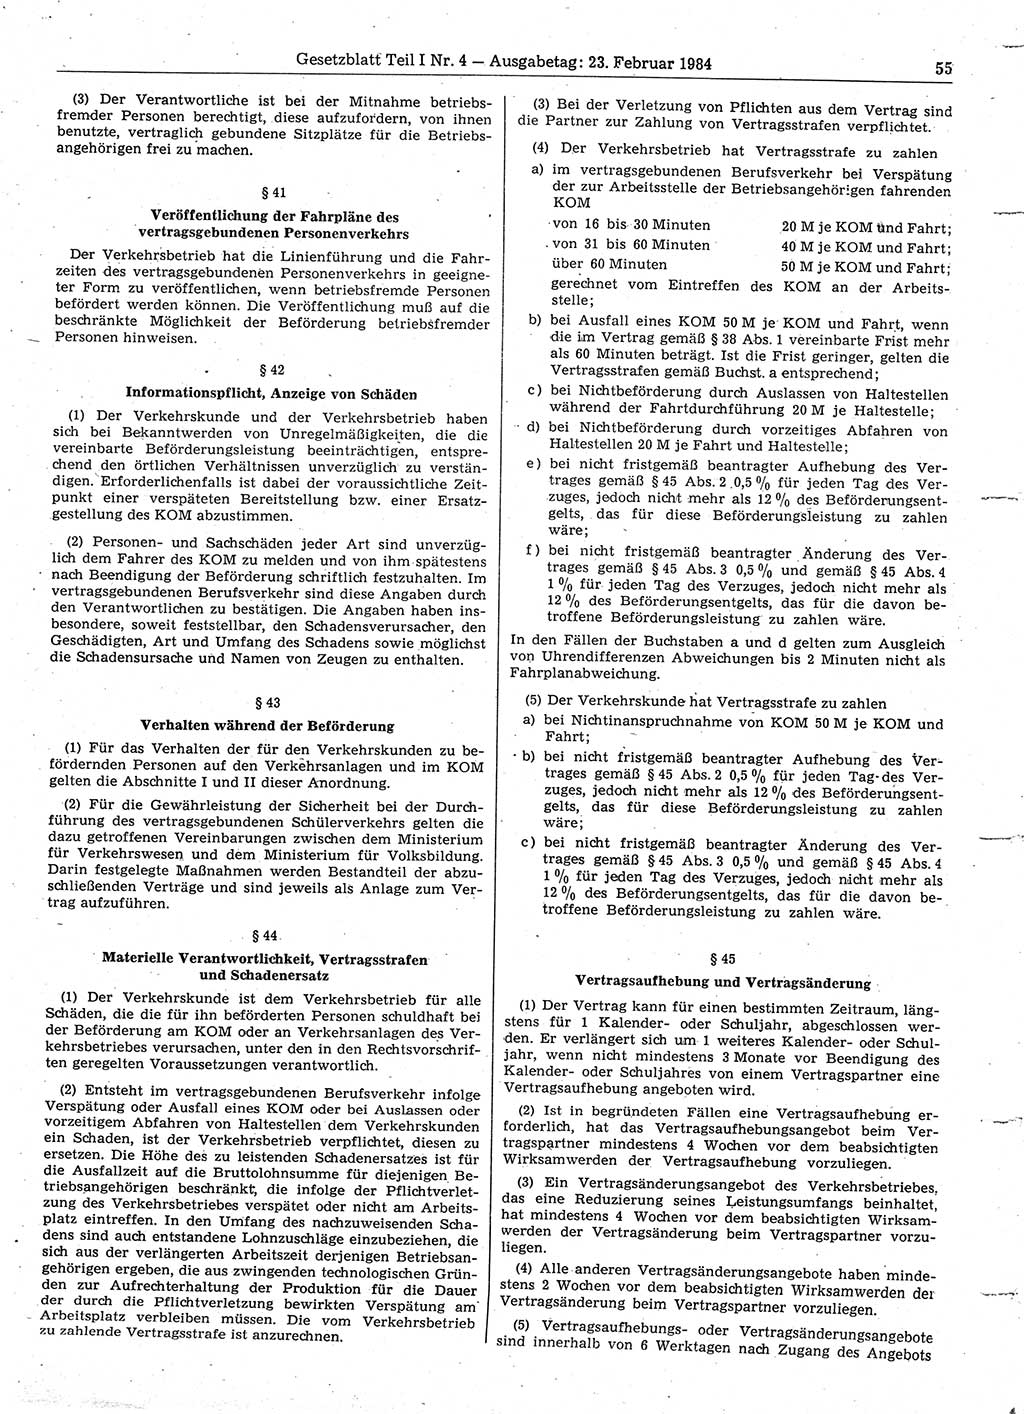 Gesetzblatt (GBl.) der Deutschen Demokratischen Republik (DDR) Teil Ⅰ 1984, Seite 55 (GBl. DDR Ⅰ 1984, S. 55)